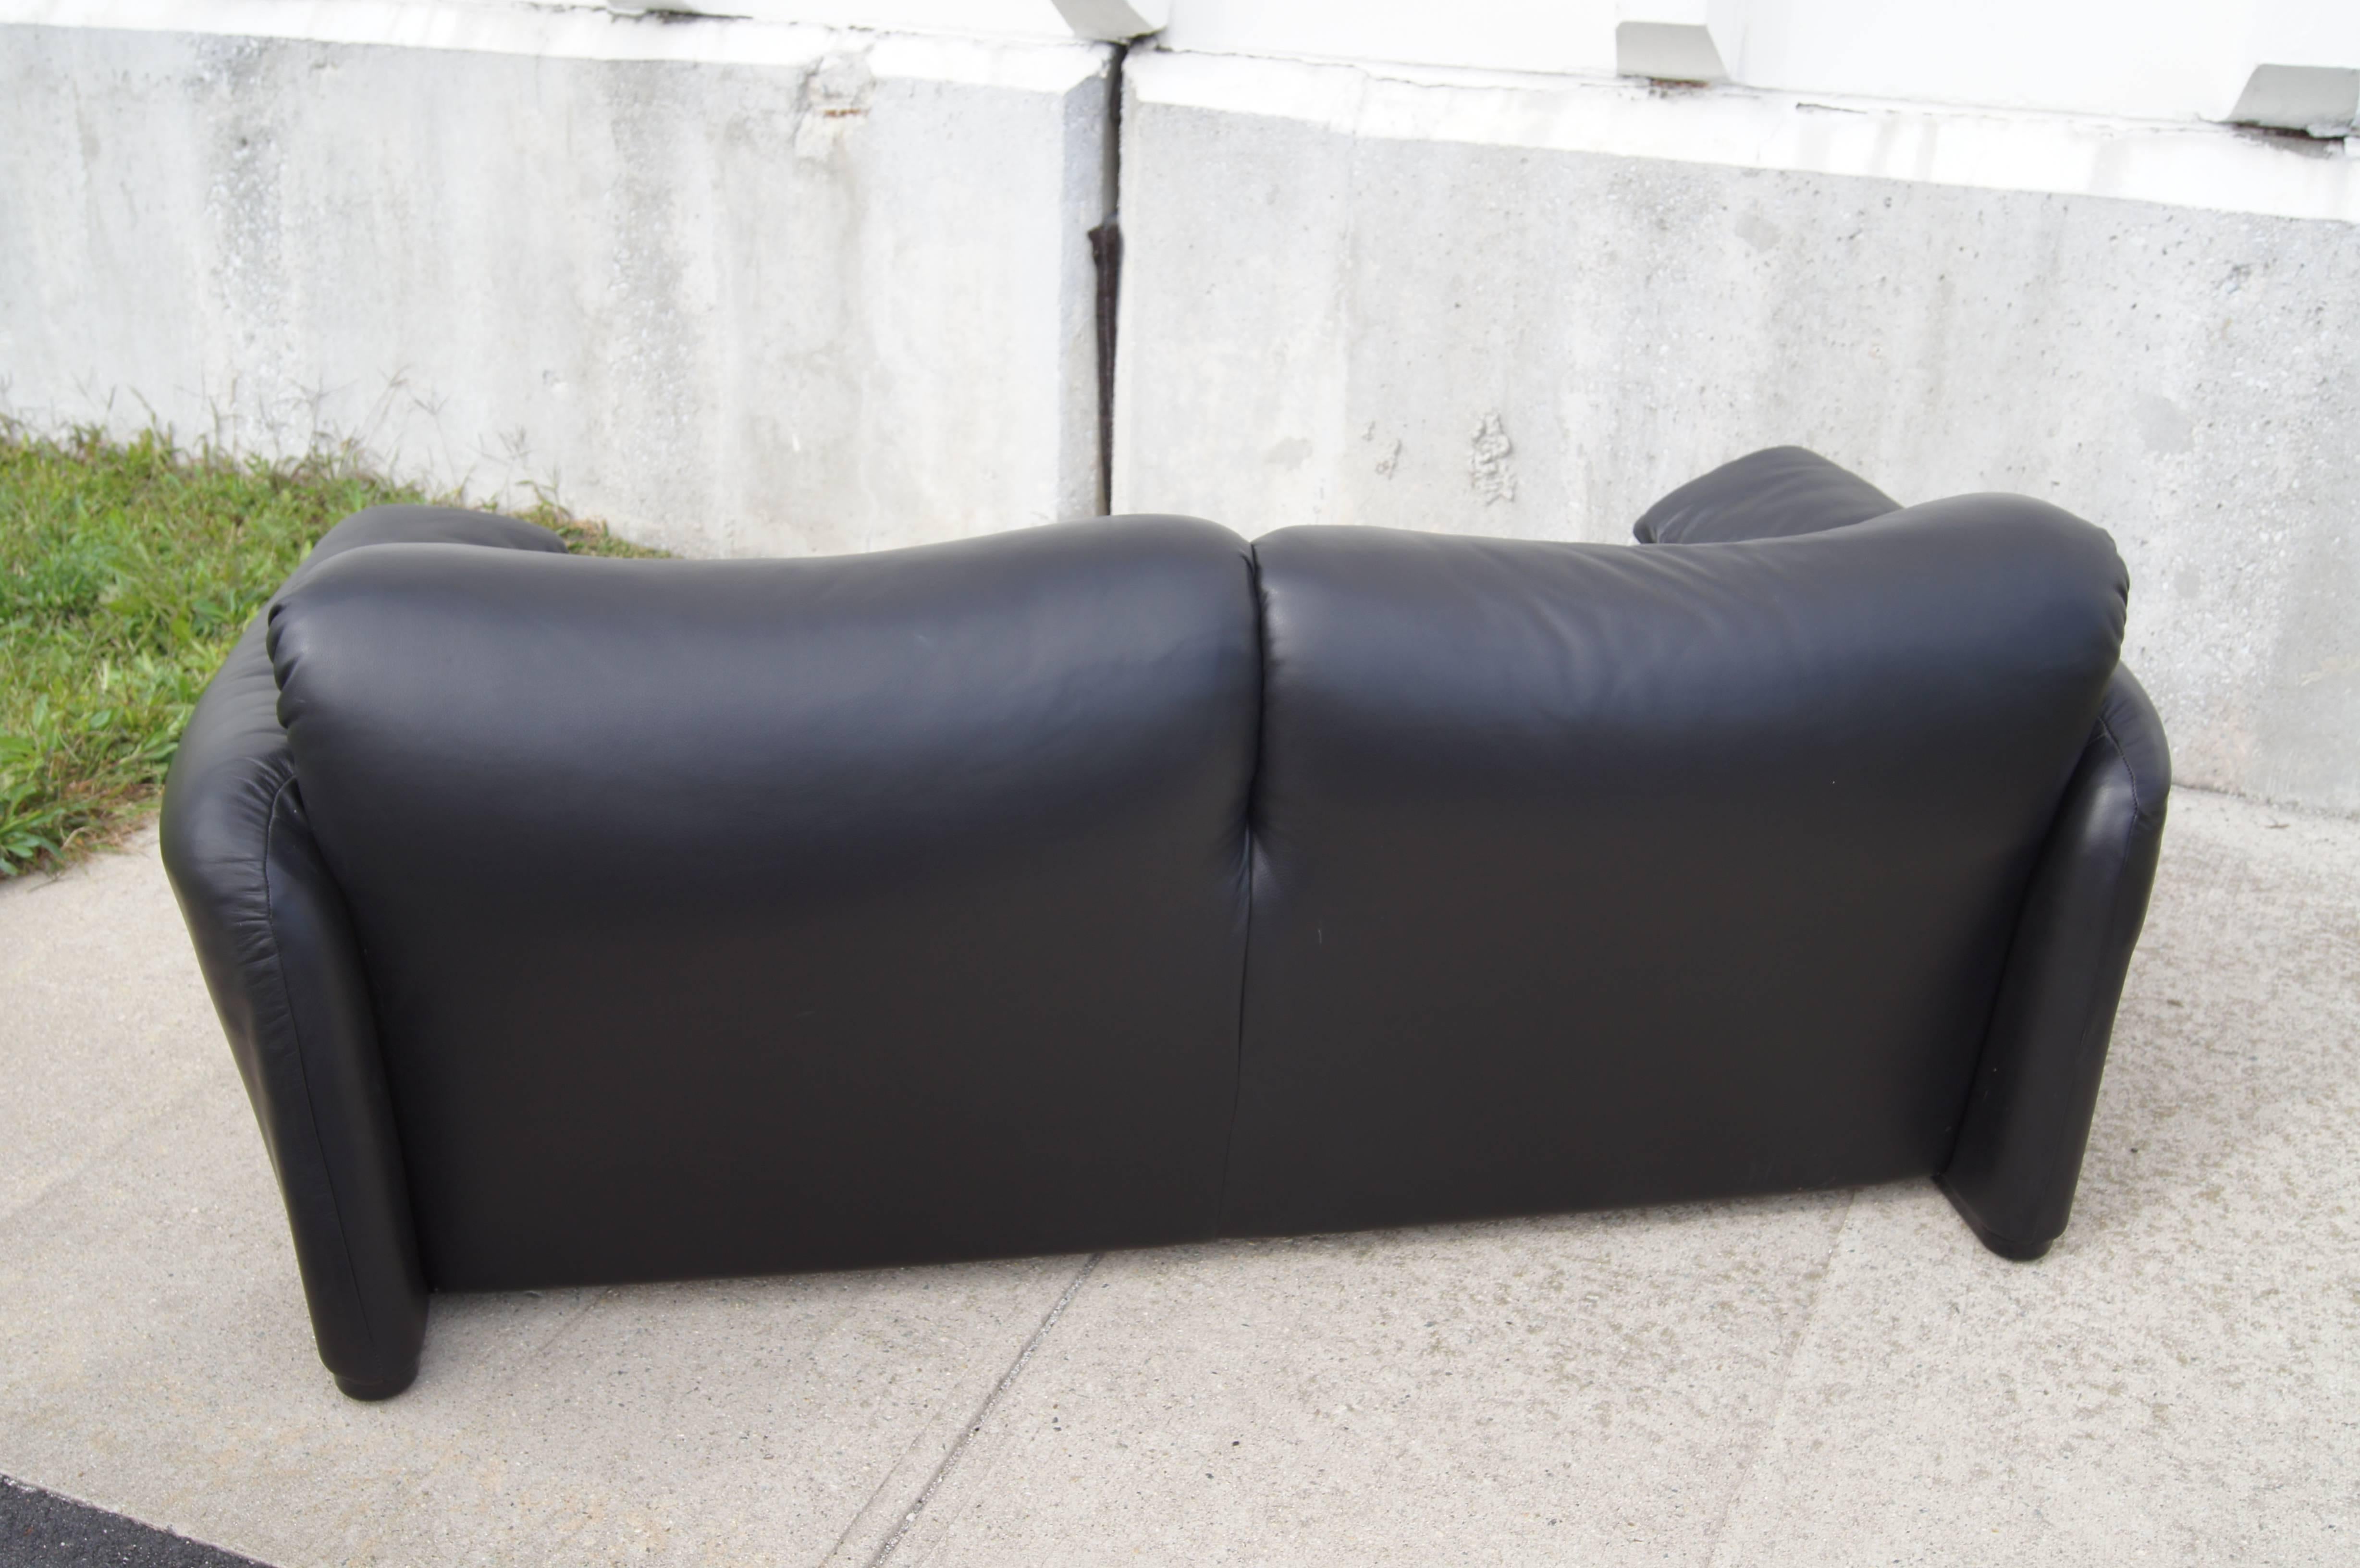 Italian Leather Two-Seat Maralunga Sofa by Vico Magistretti for Cassina